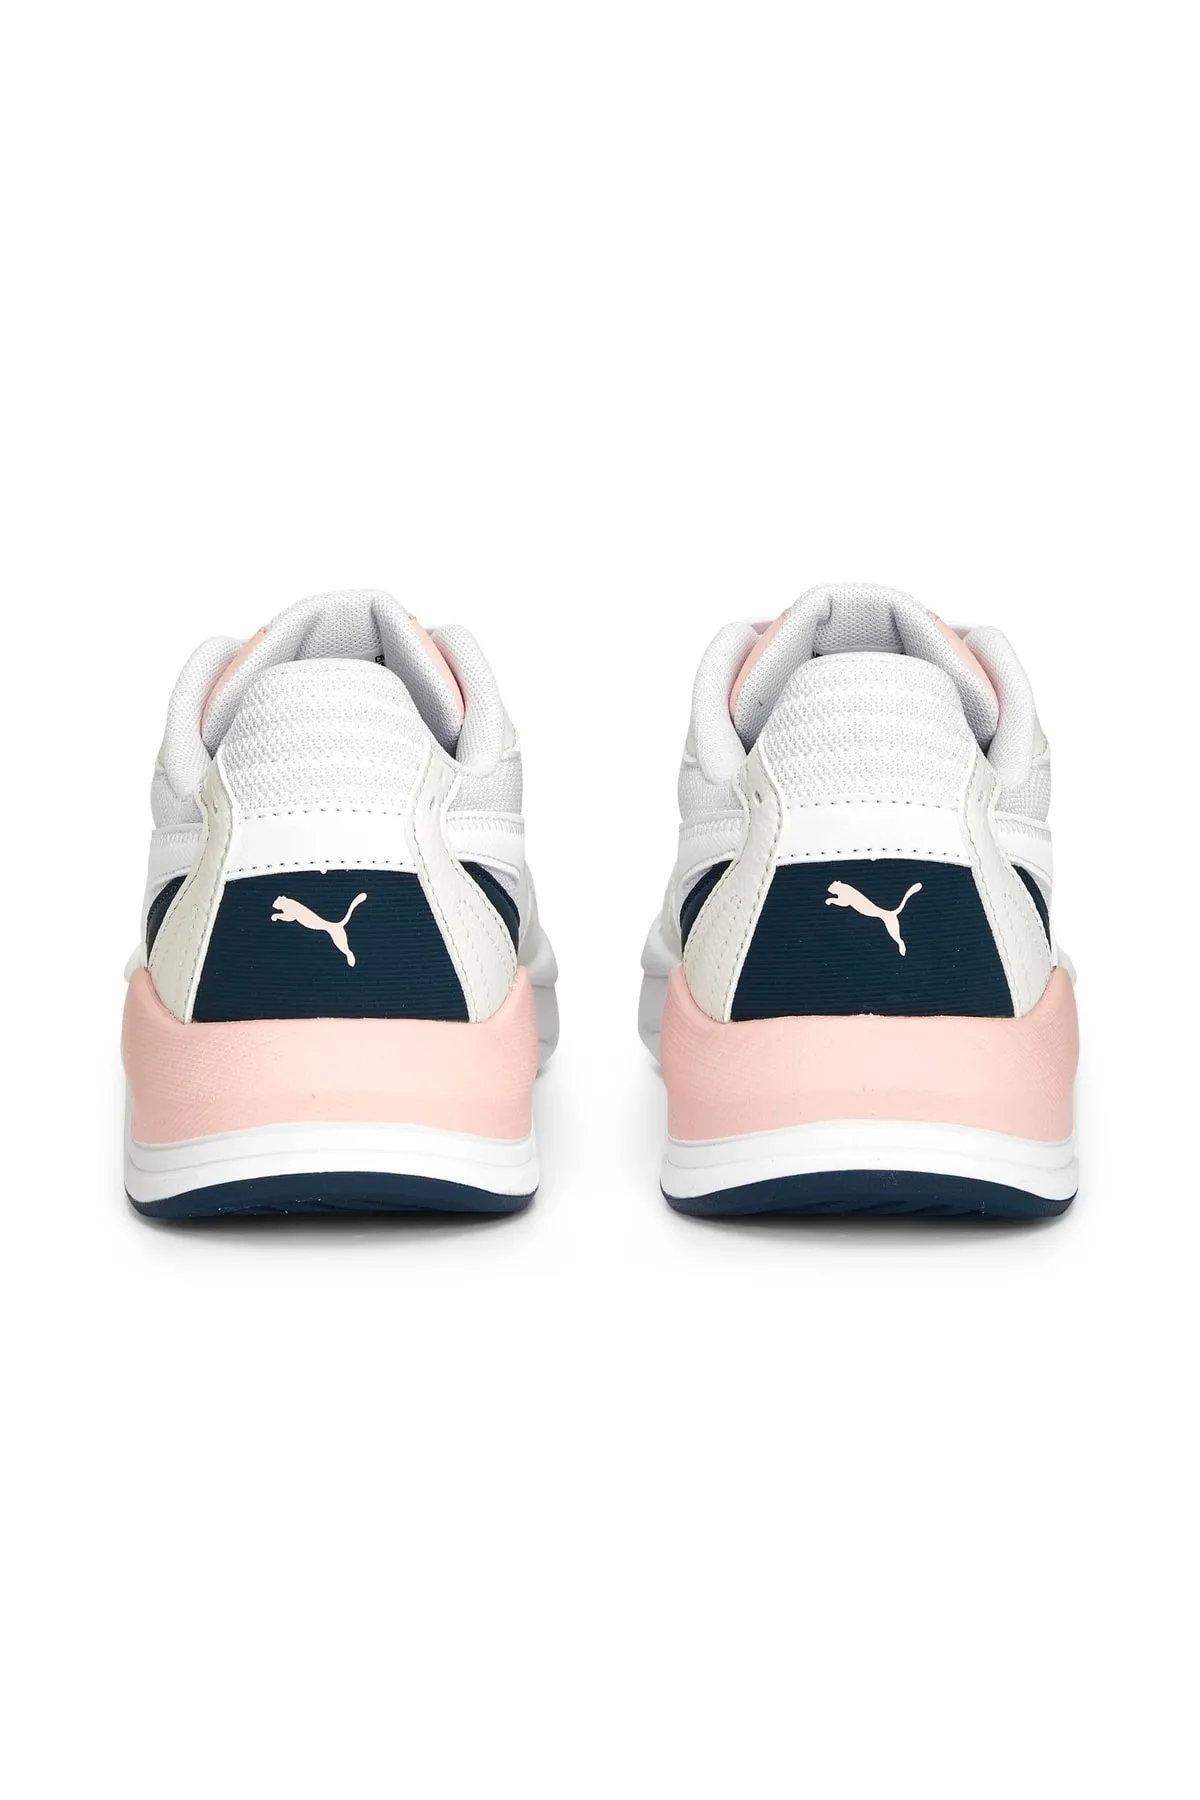 X-Ray Speed Lite - Kadın Sneaker Ayakkabı 384639 -Beyaz